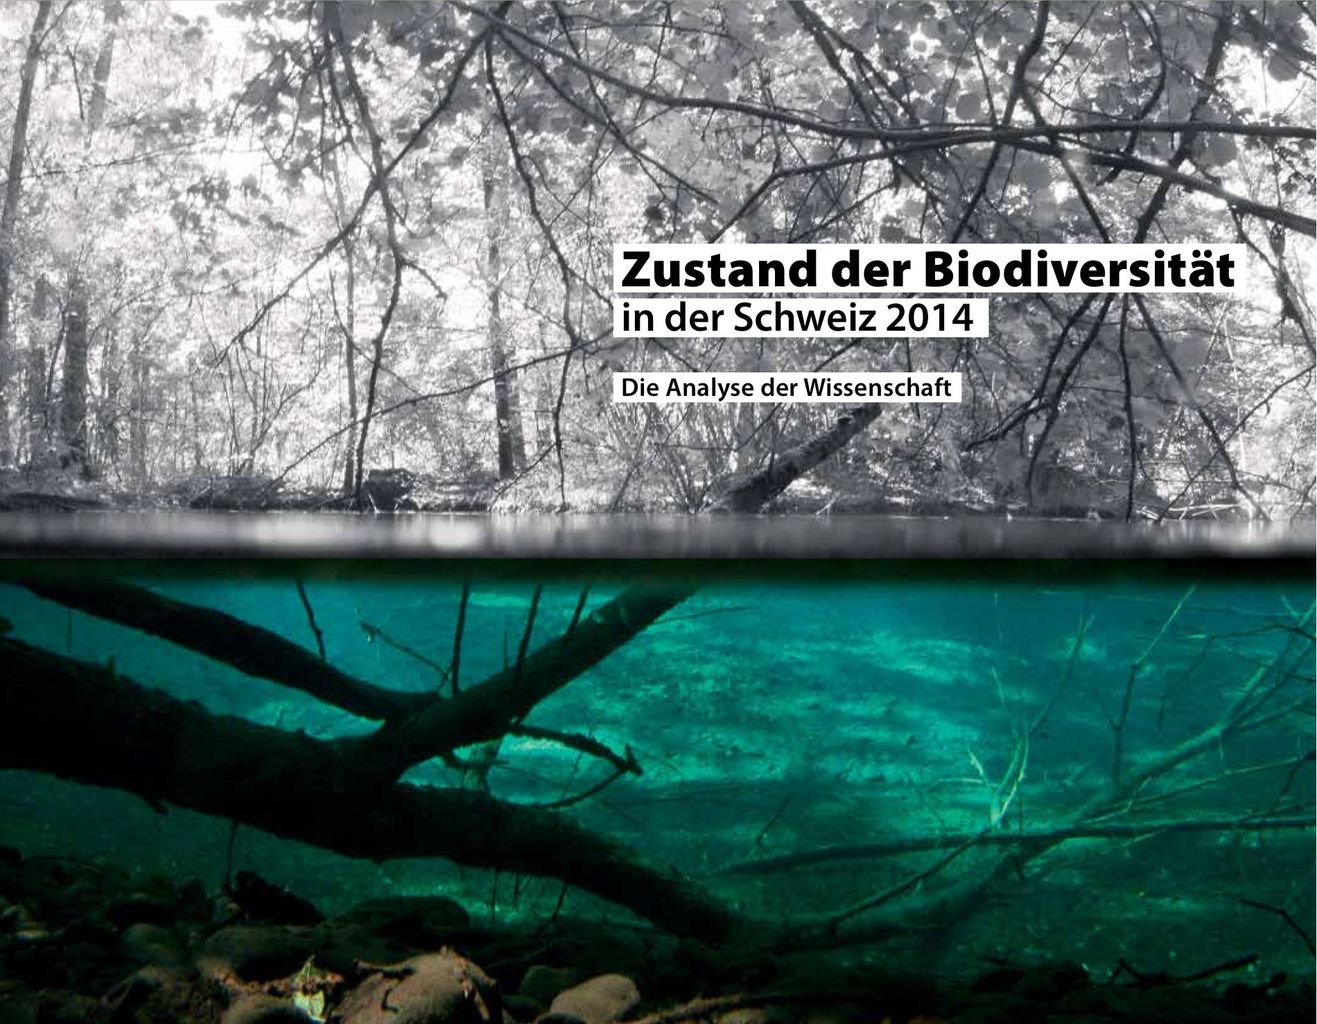 Zustand der Biodiversität in der Schweiz 2014 - Die Analyse der Wissenschaft